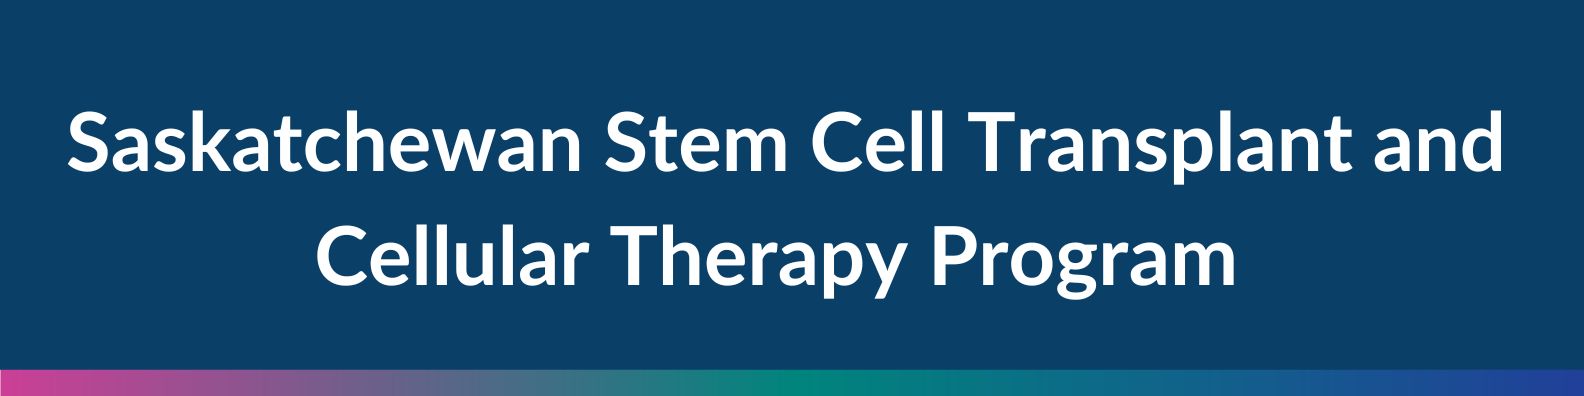 Stem Cell Transplant Program banner 2